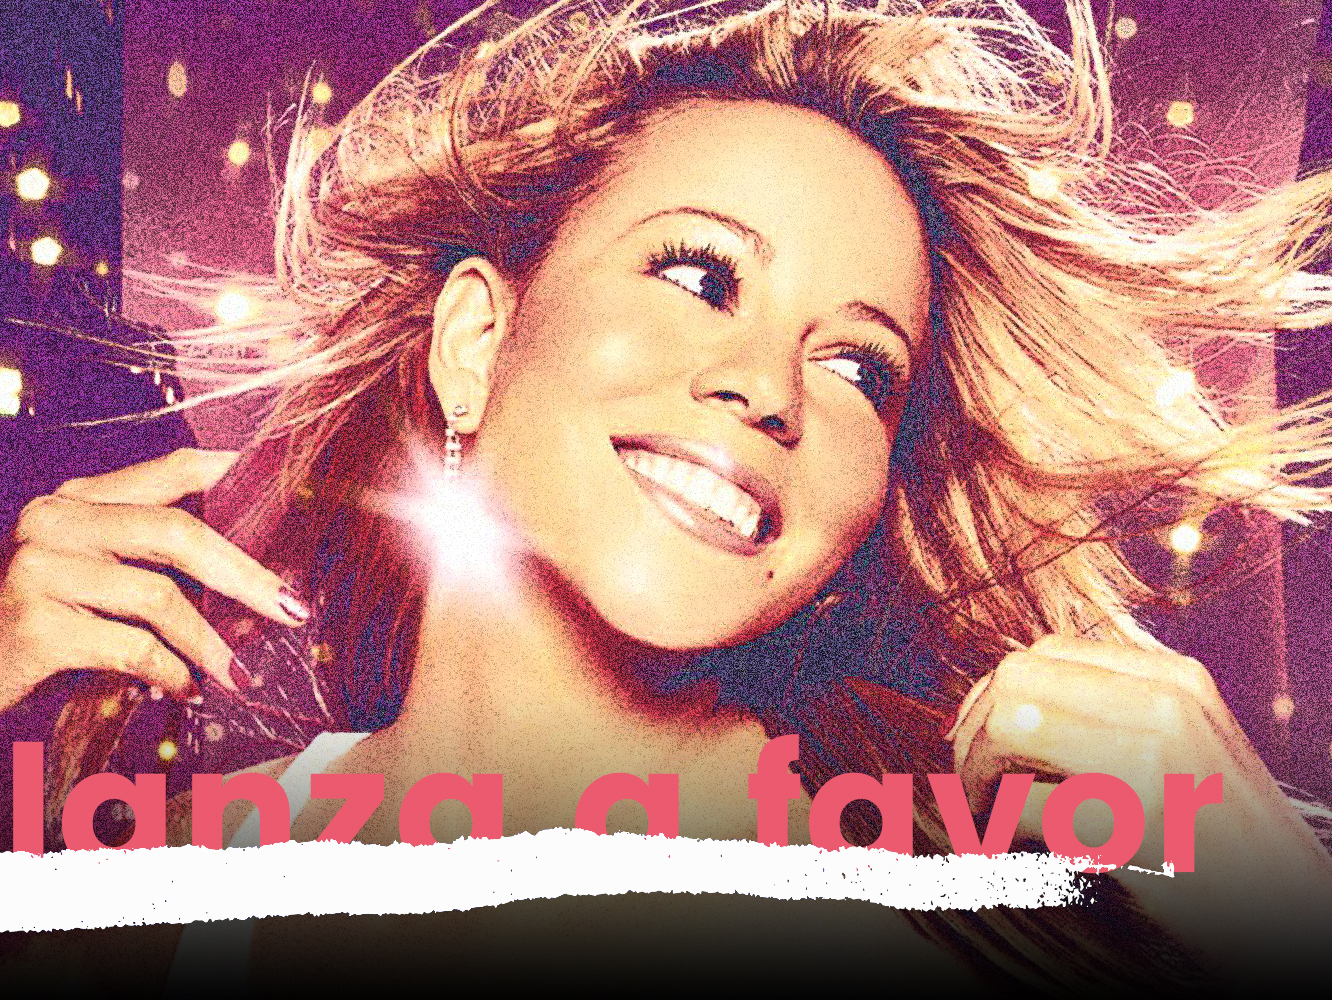  Lanza a favor de ‘Glitter’ | Todo lo que sí brillaba en el álbum de Mariah Carey